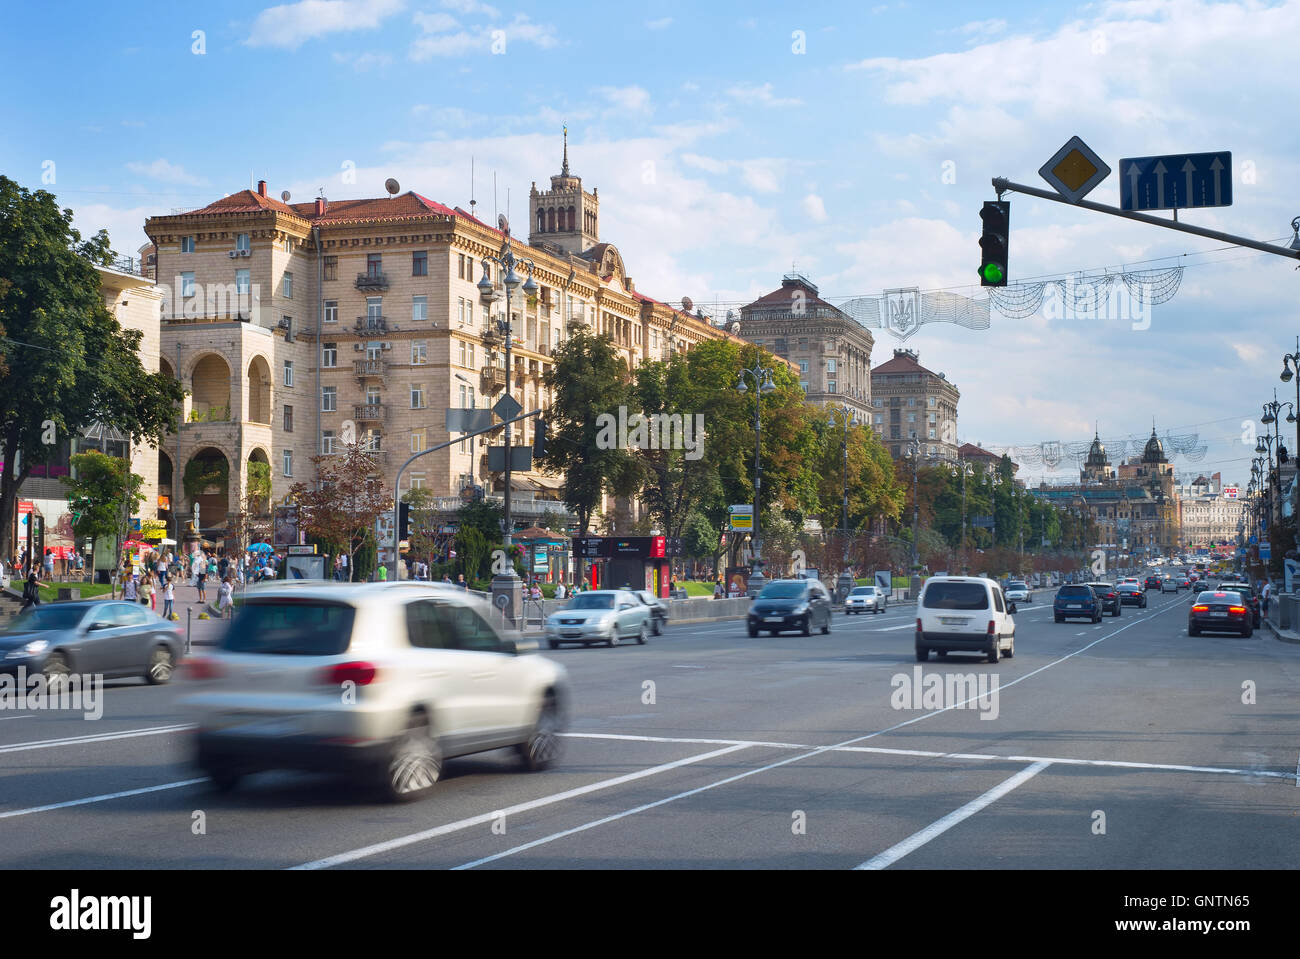 Verkehr auf einer Straße in Stadt Zentrum von Kiew. Kiew ist die Hauptstadt der Ukraine. Stockfoto